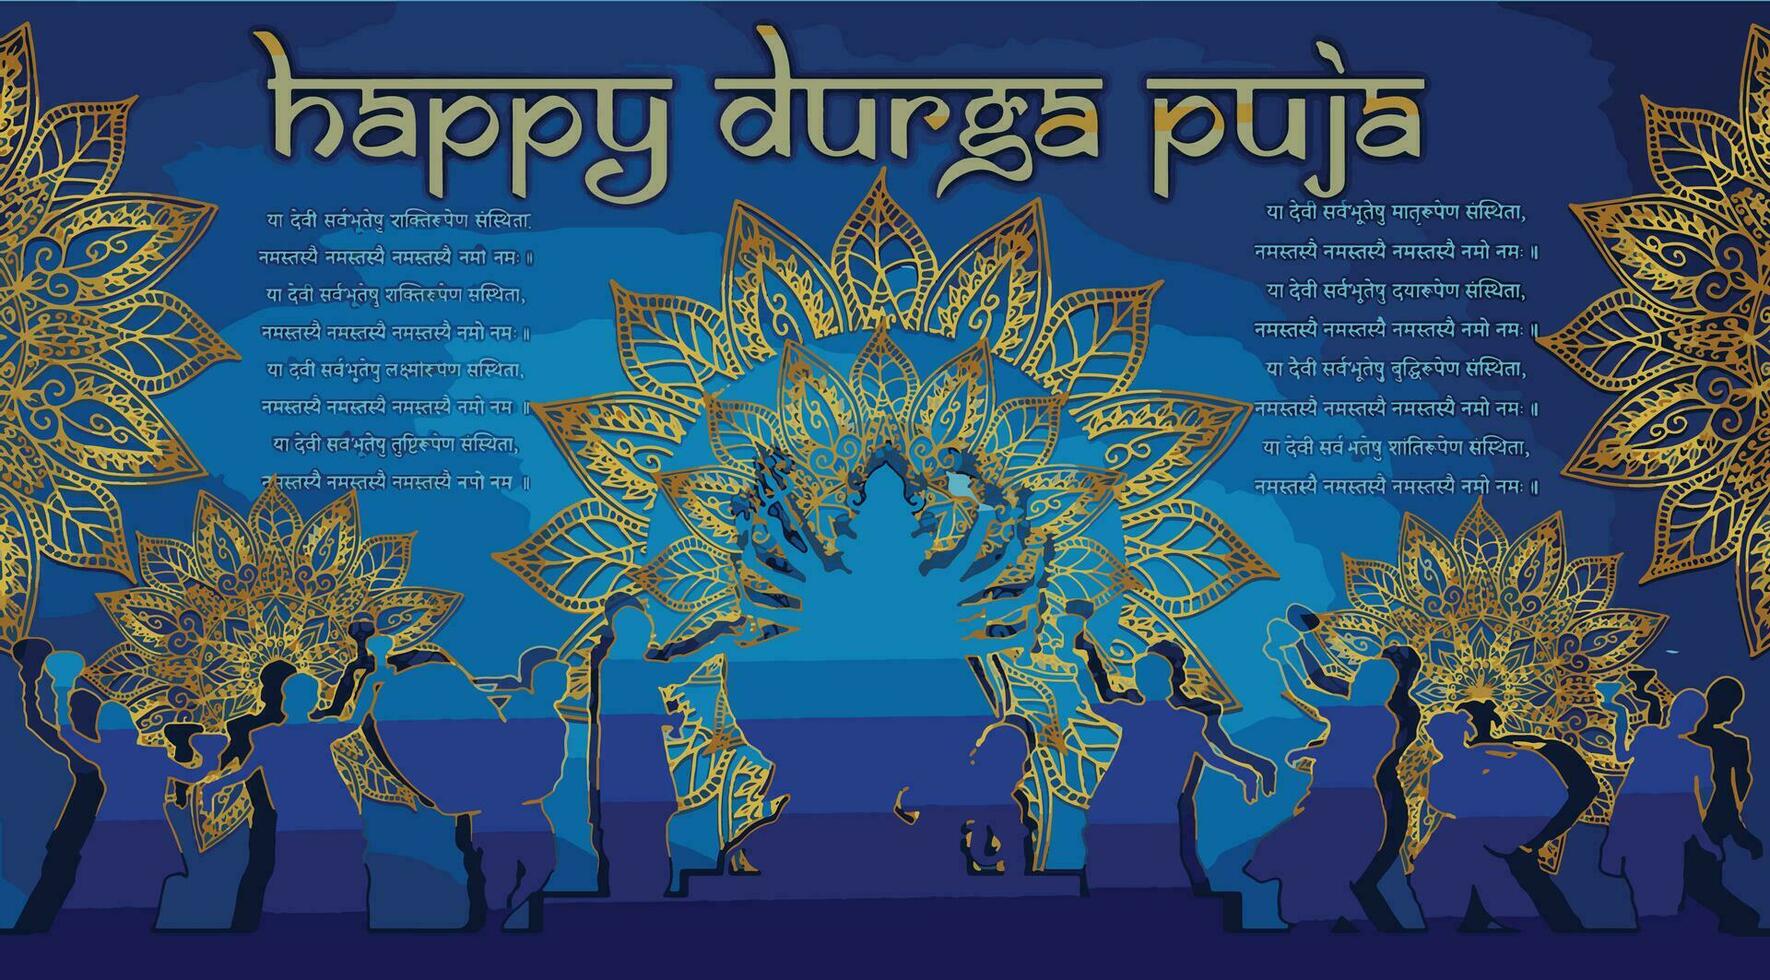 diosa maa Durga F en contento Durga puya, dussehra, y navratri celebracion concepto para web bandera, póster, social medios de comunicación correo, y volantes publicidad vector